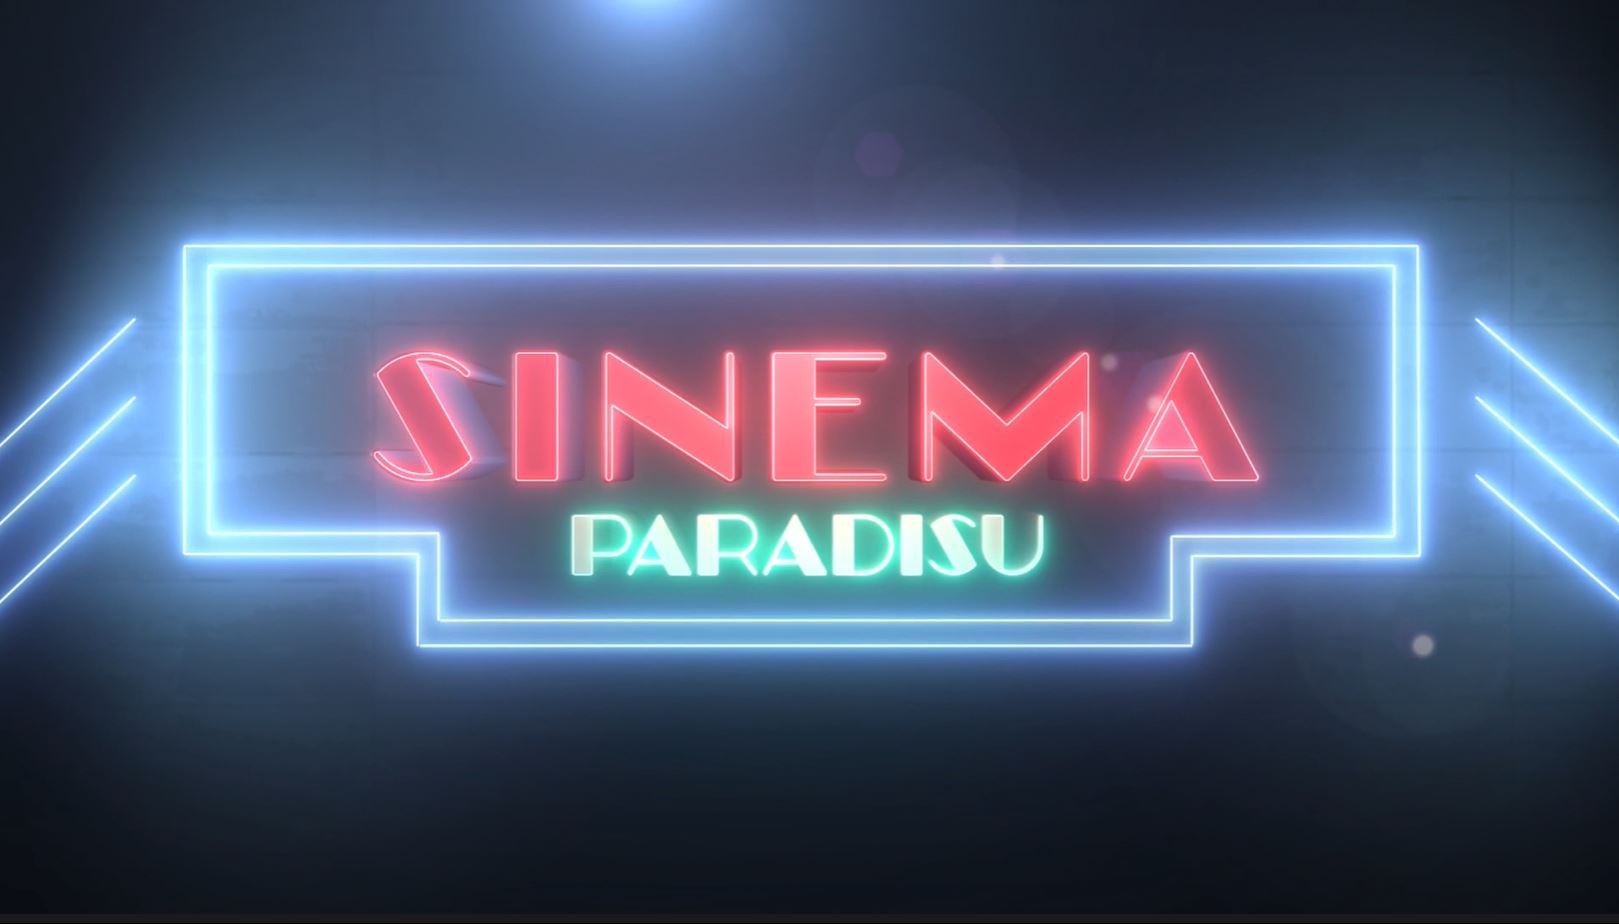 Sinema Paradisu logo